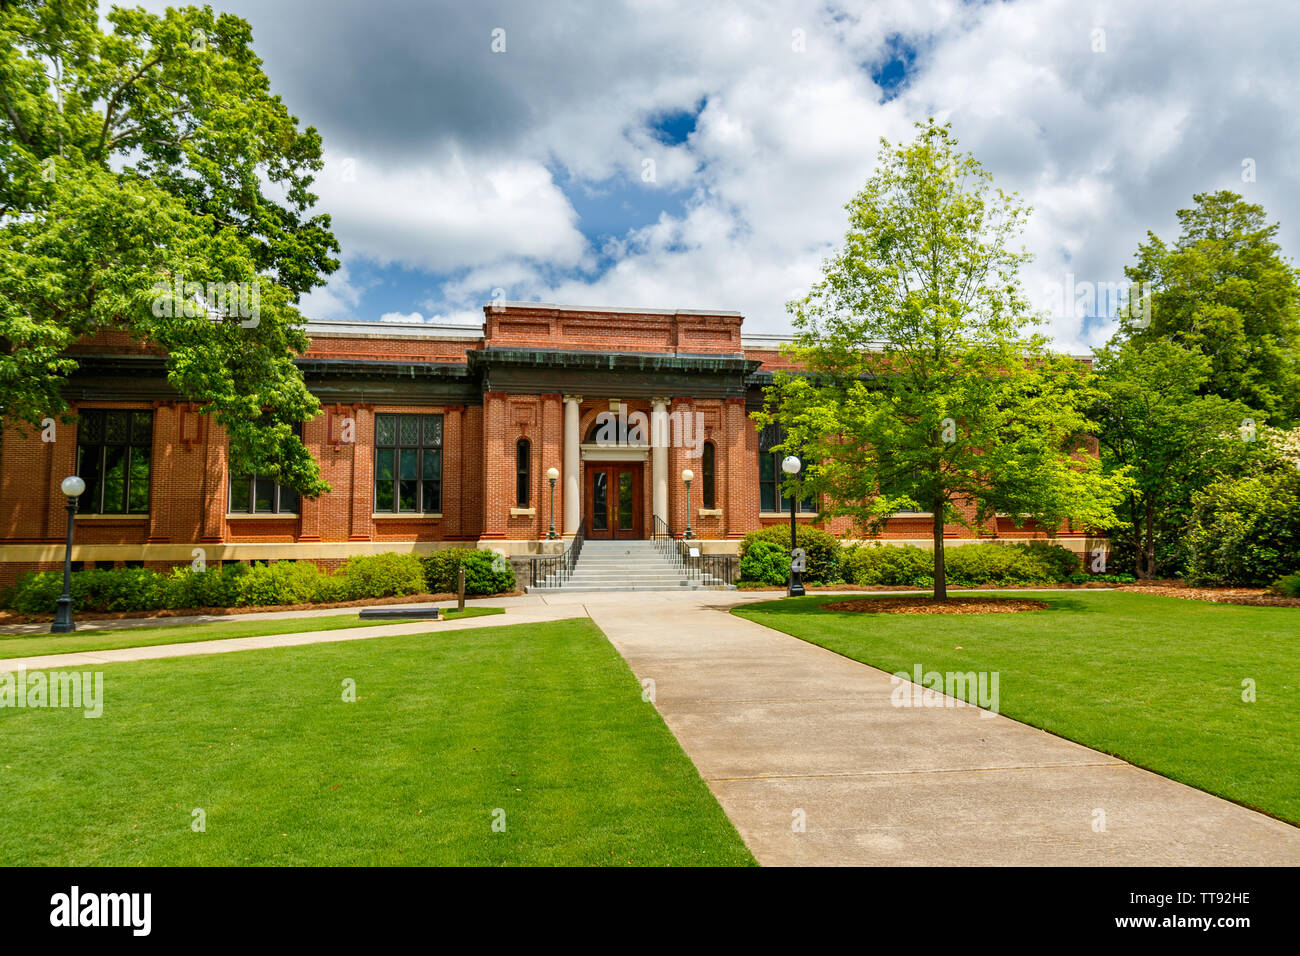 ATHENS, GA, USA - Mai 3: Verwaltungsgebäude am 3. Mai 2019 an der Universität von Georgia, North Campus in Athens, Georgia. Stockfoto